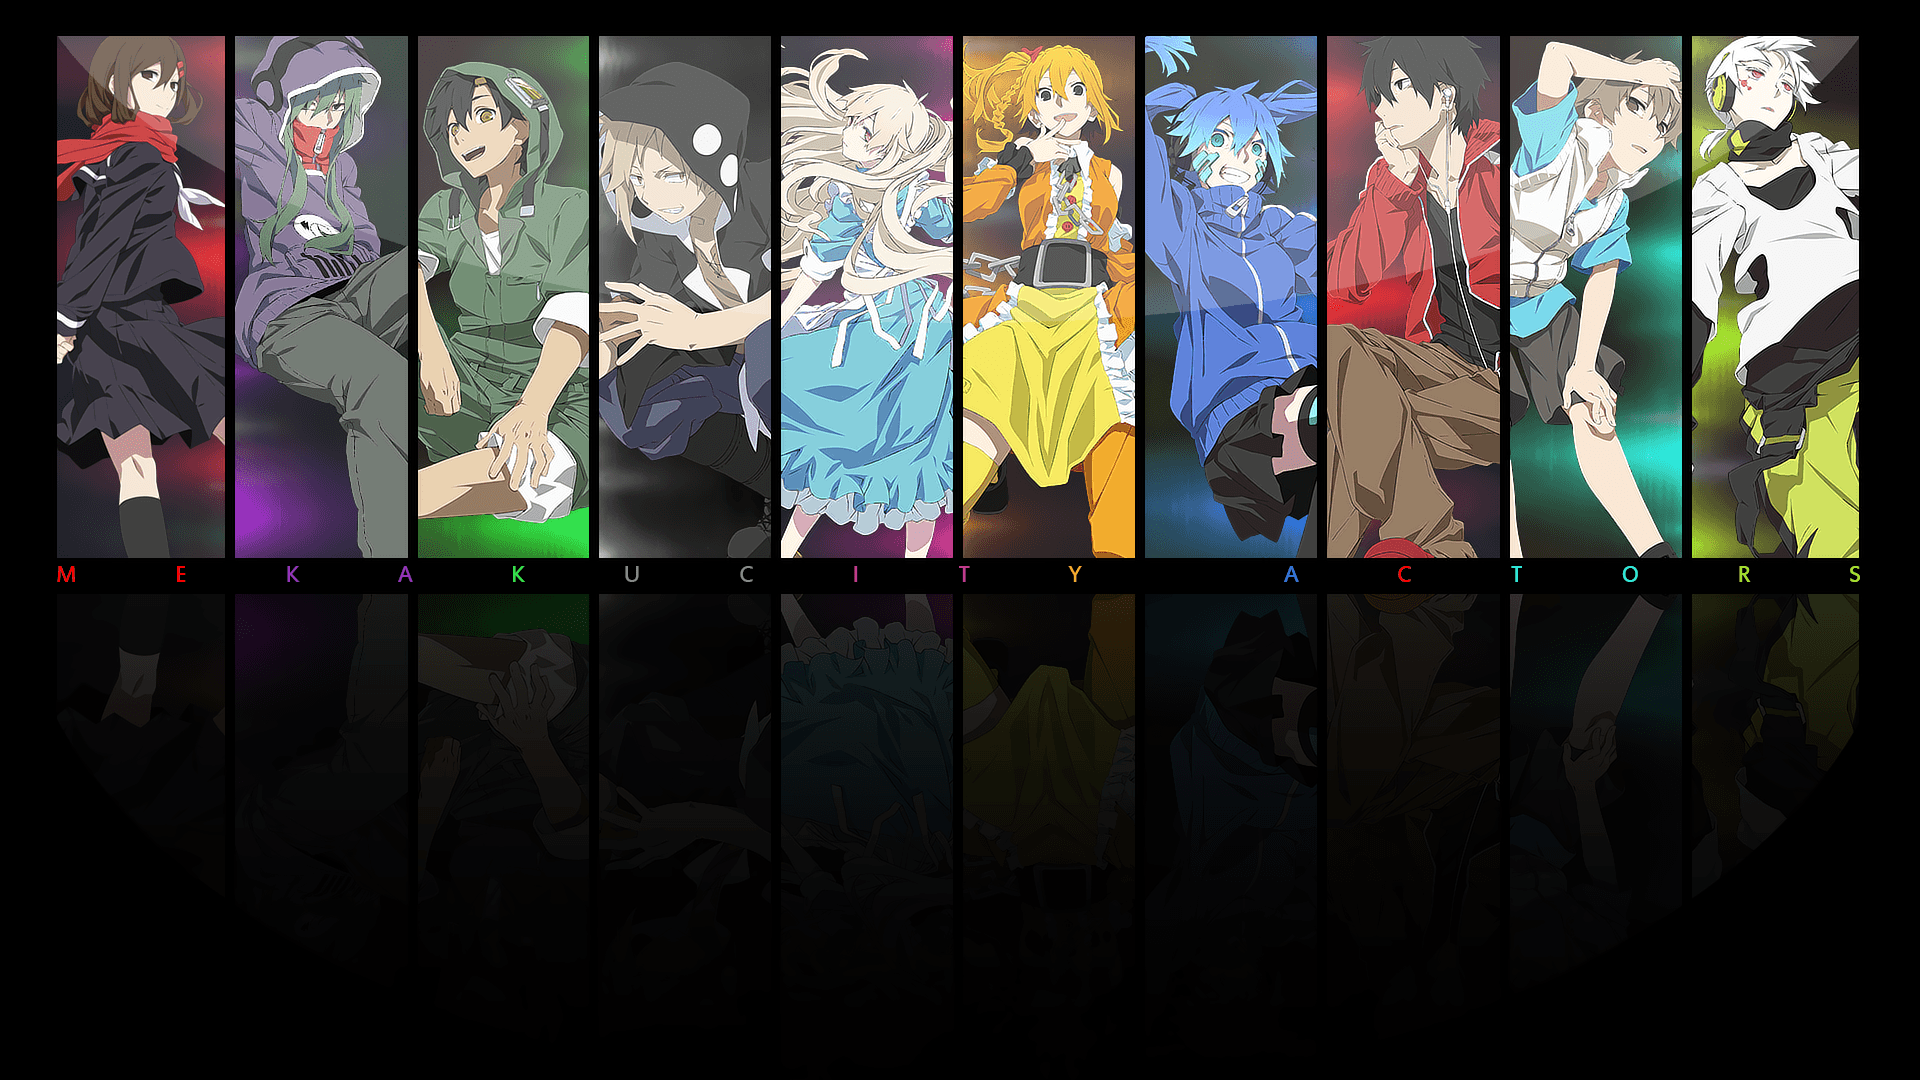 Mekakucity Actors Wallpaper. Anime Groups Wallpaper